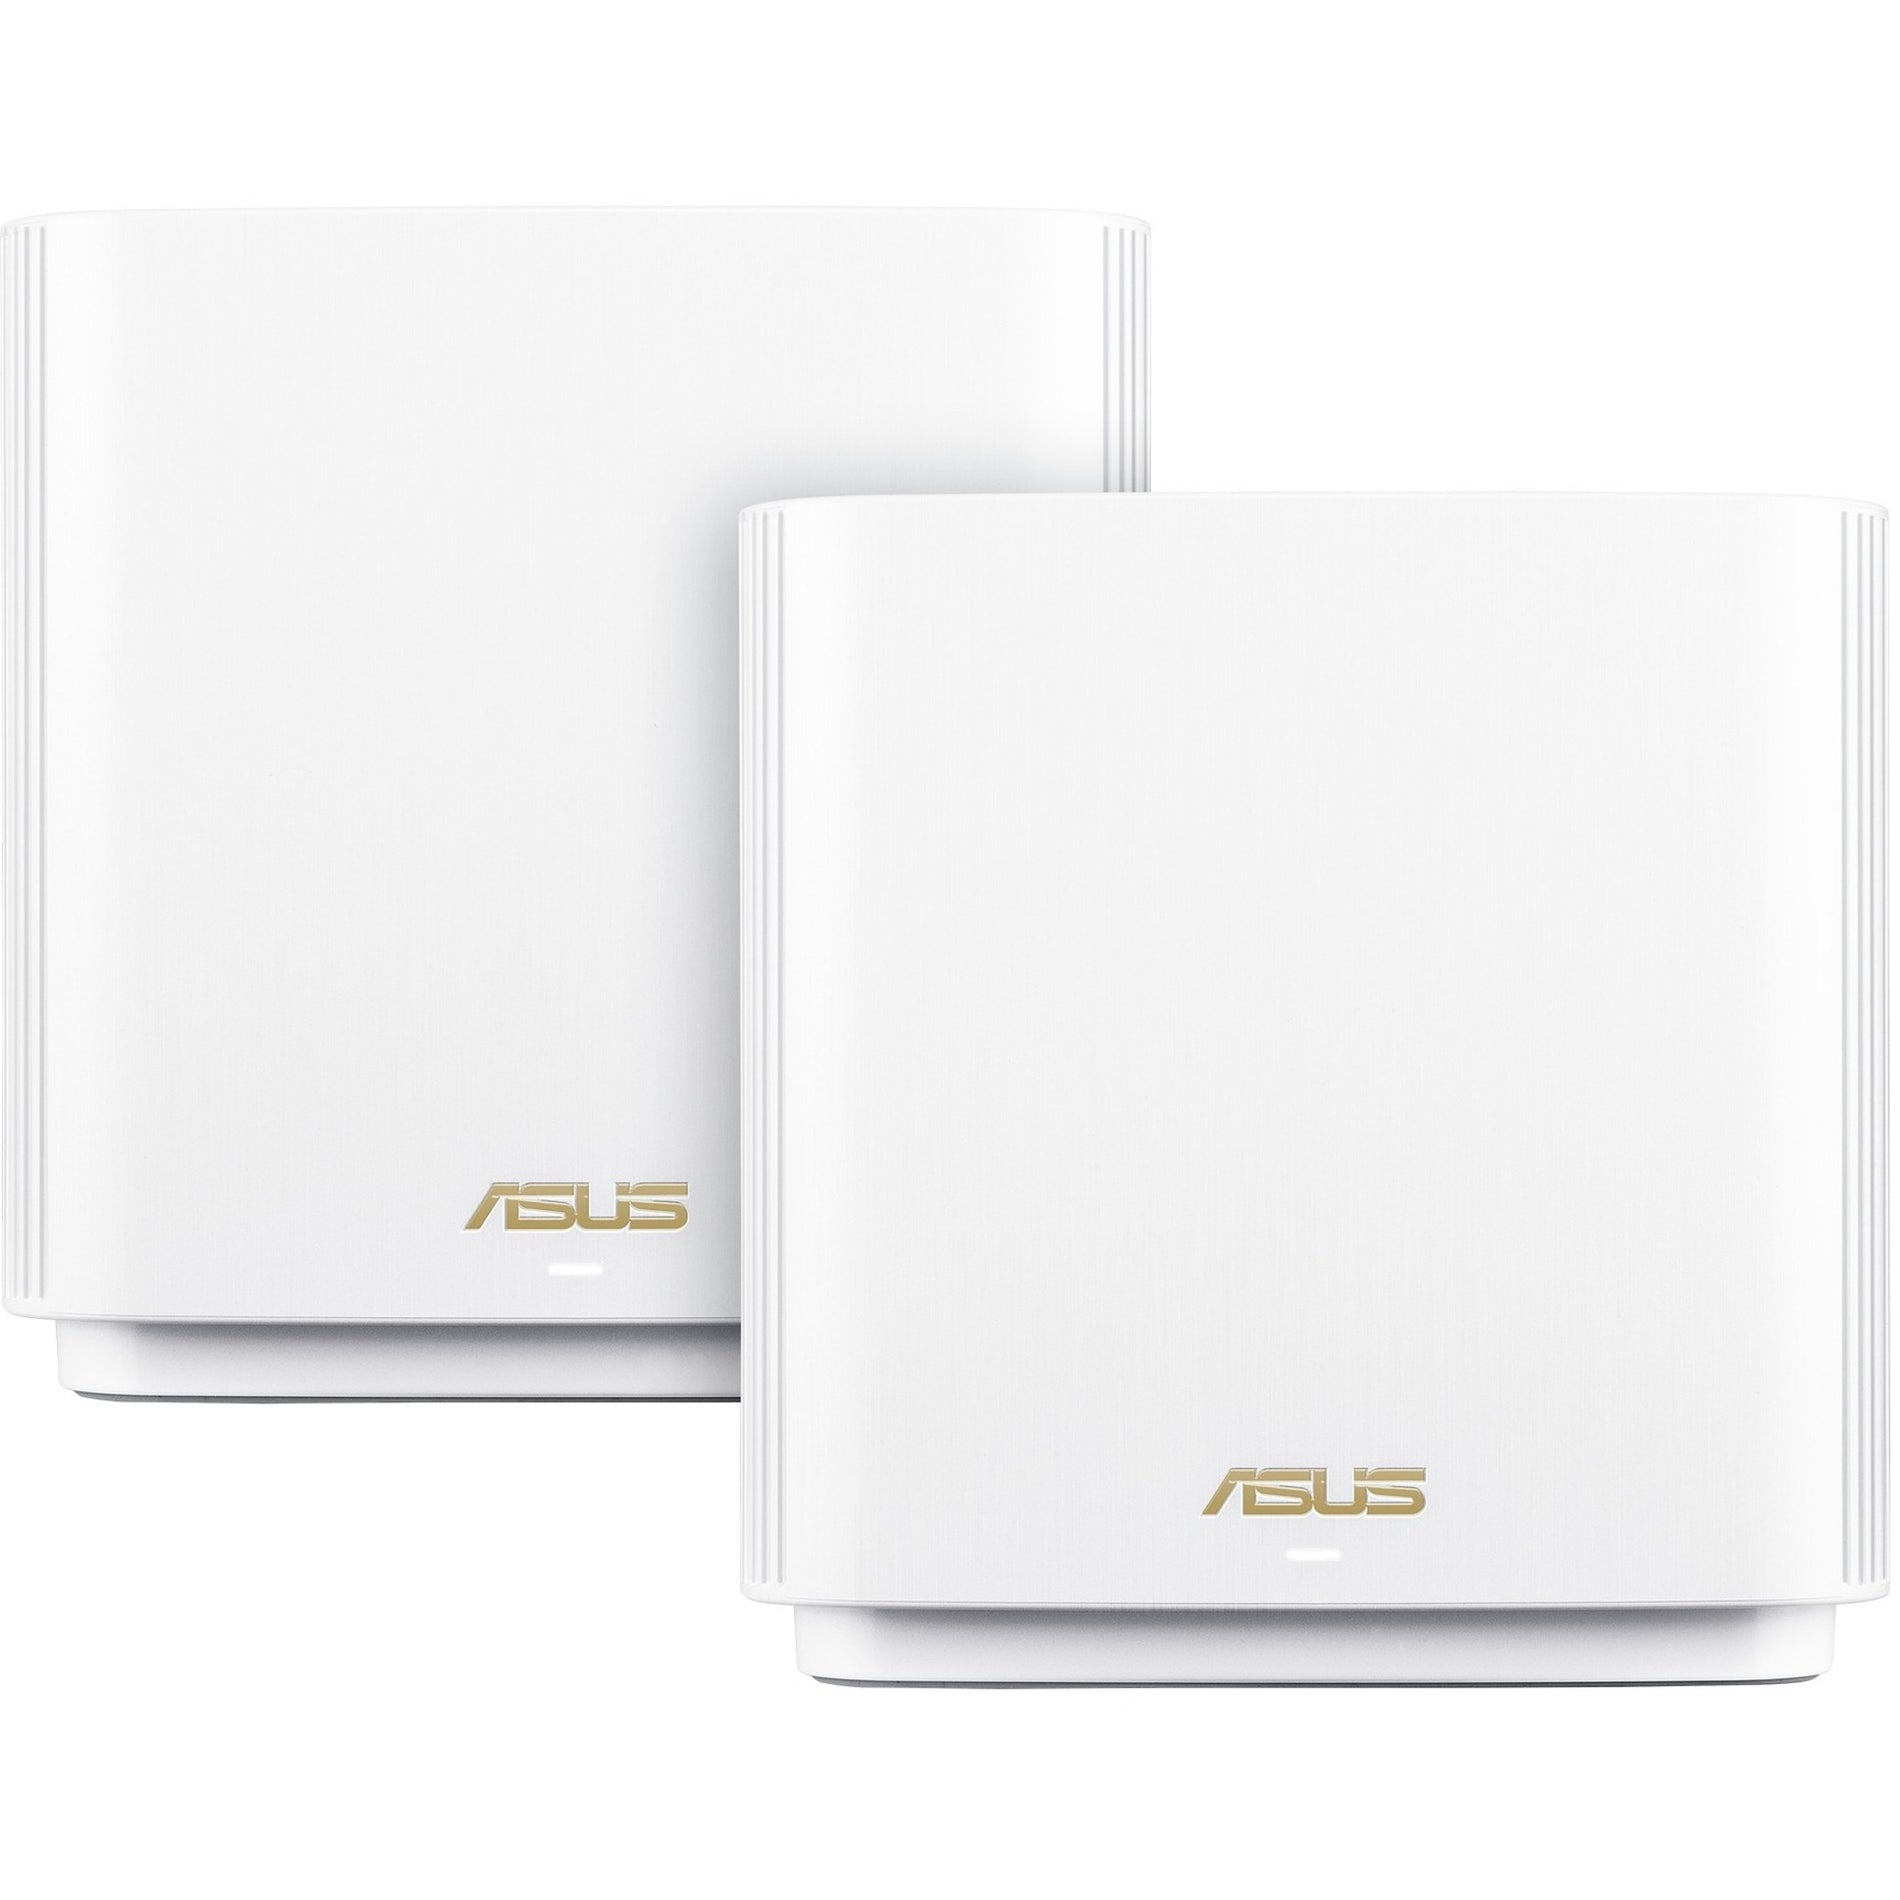 Asus ET8 (W-2-PK) ZenWiFi Wireless Router, Wi-Fi 6, 825 MB/s Total Wireless Transmission Speed